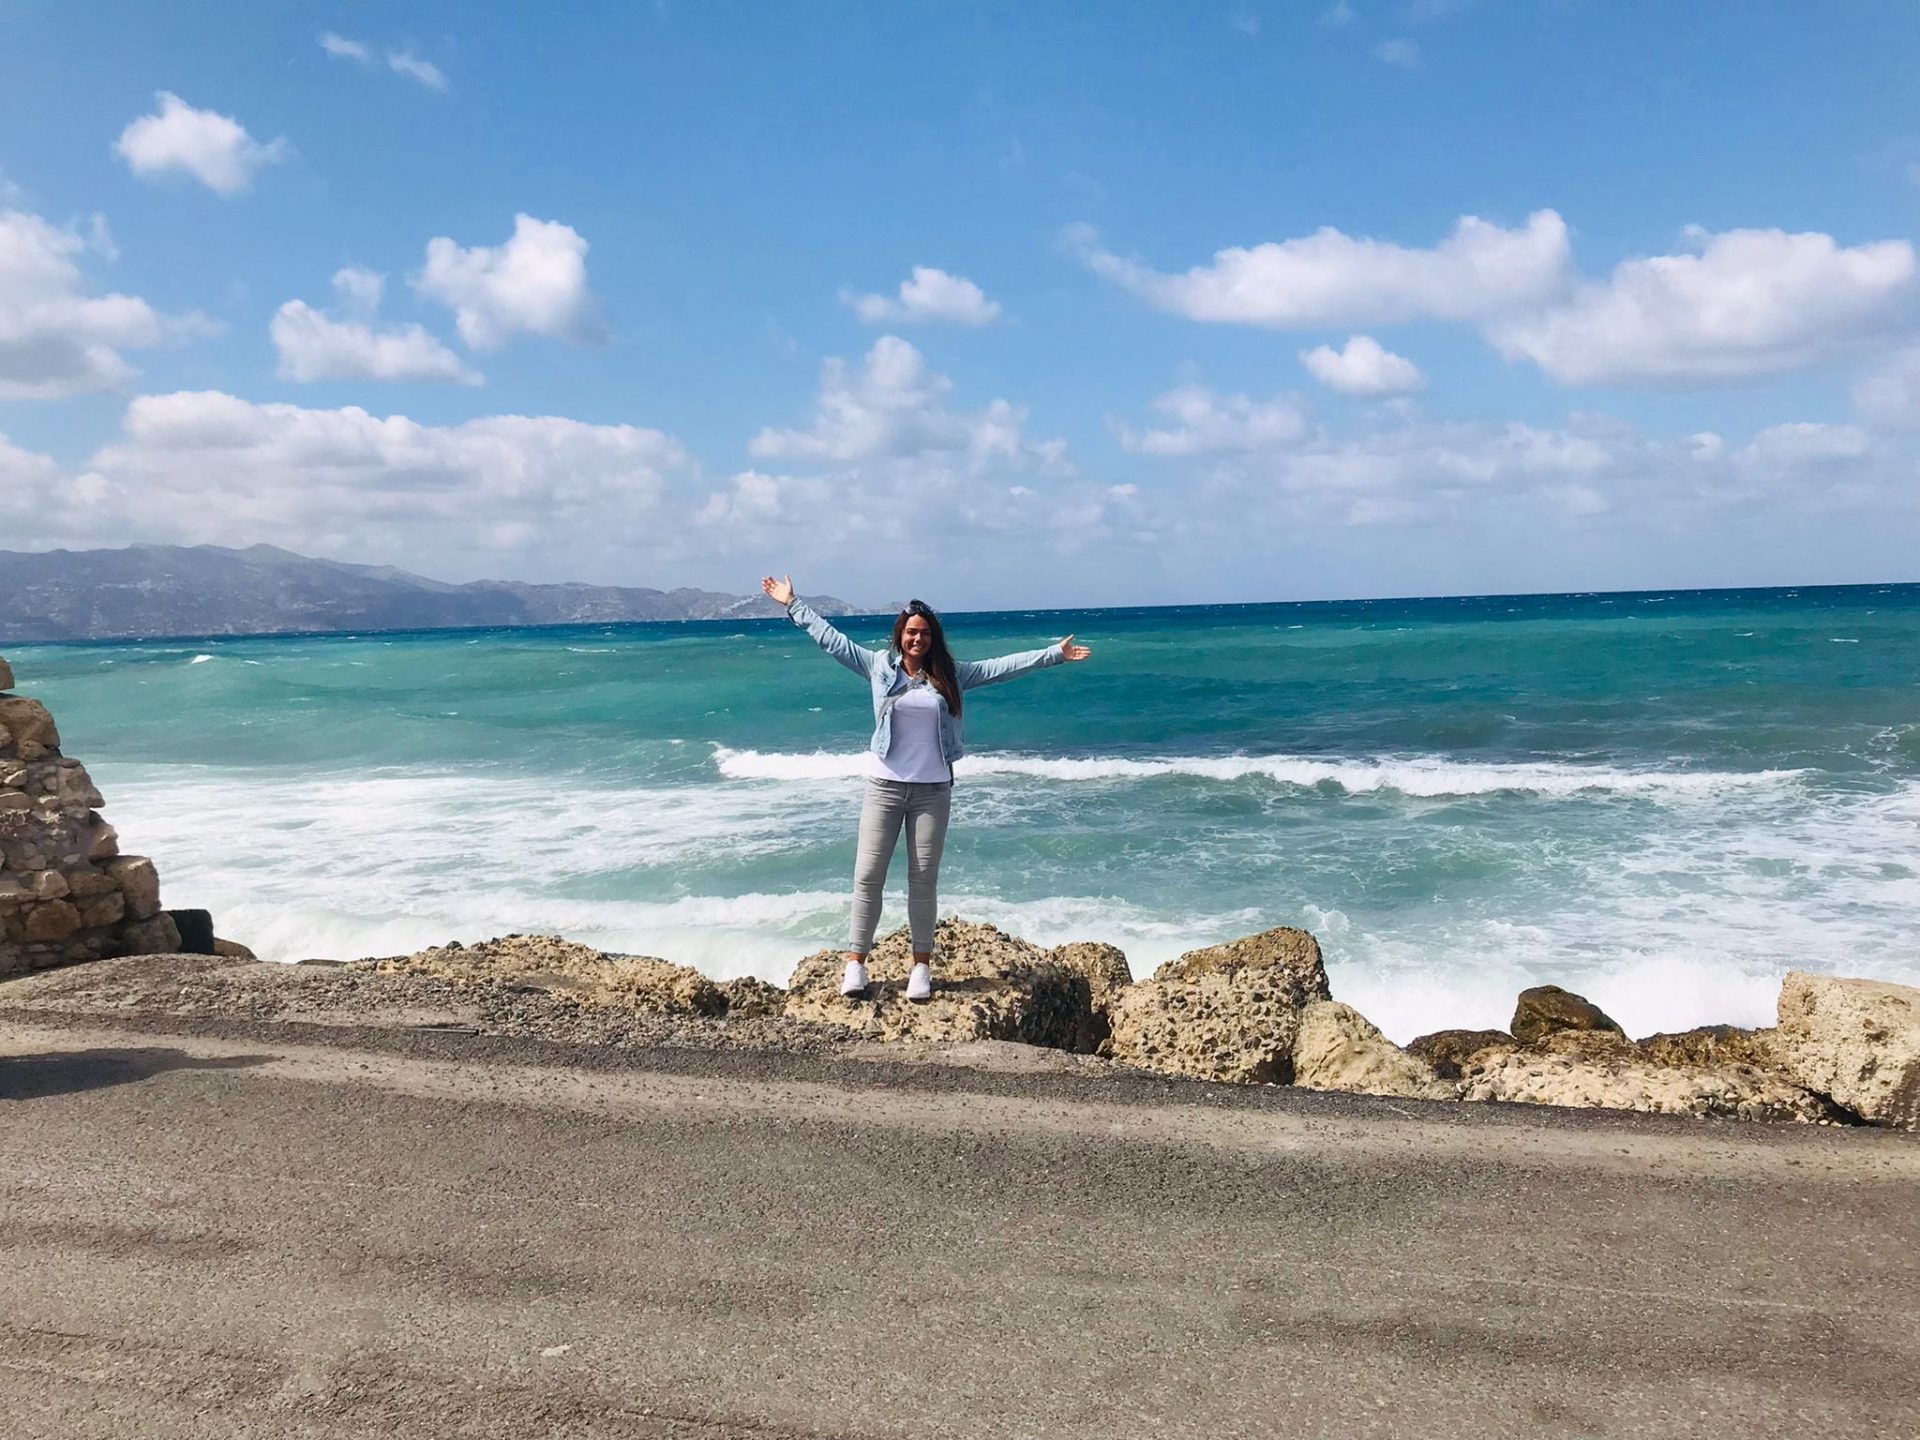 Reiseberaterin Sabrina Müller von REISEBÜRO Wache, Erfurt, auf Felsen vor tosendem, türkisfarbenem Meer auf Kreta, Griechenland, im Hintergrund Berge